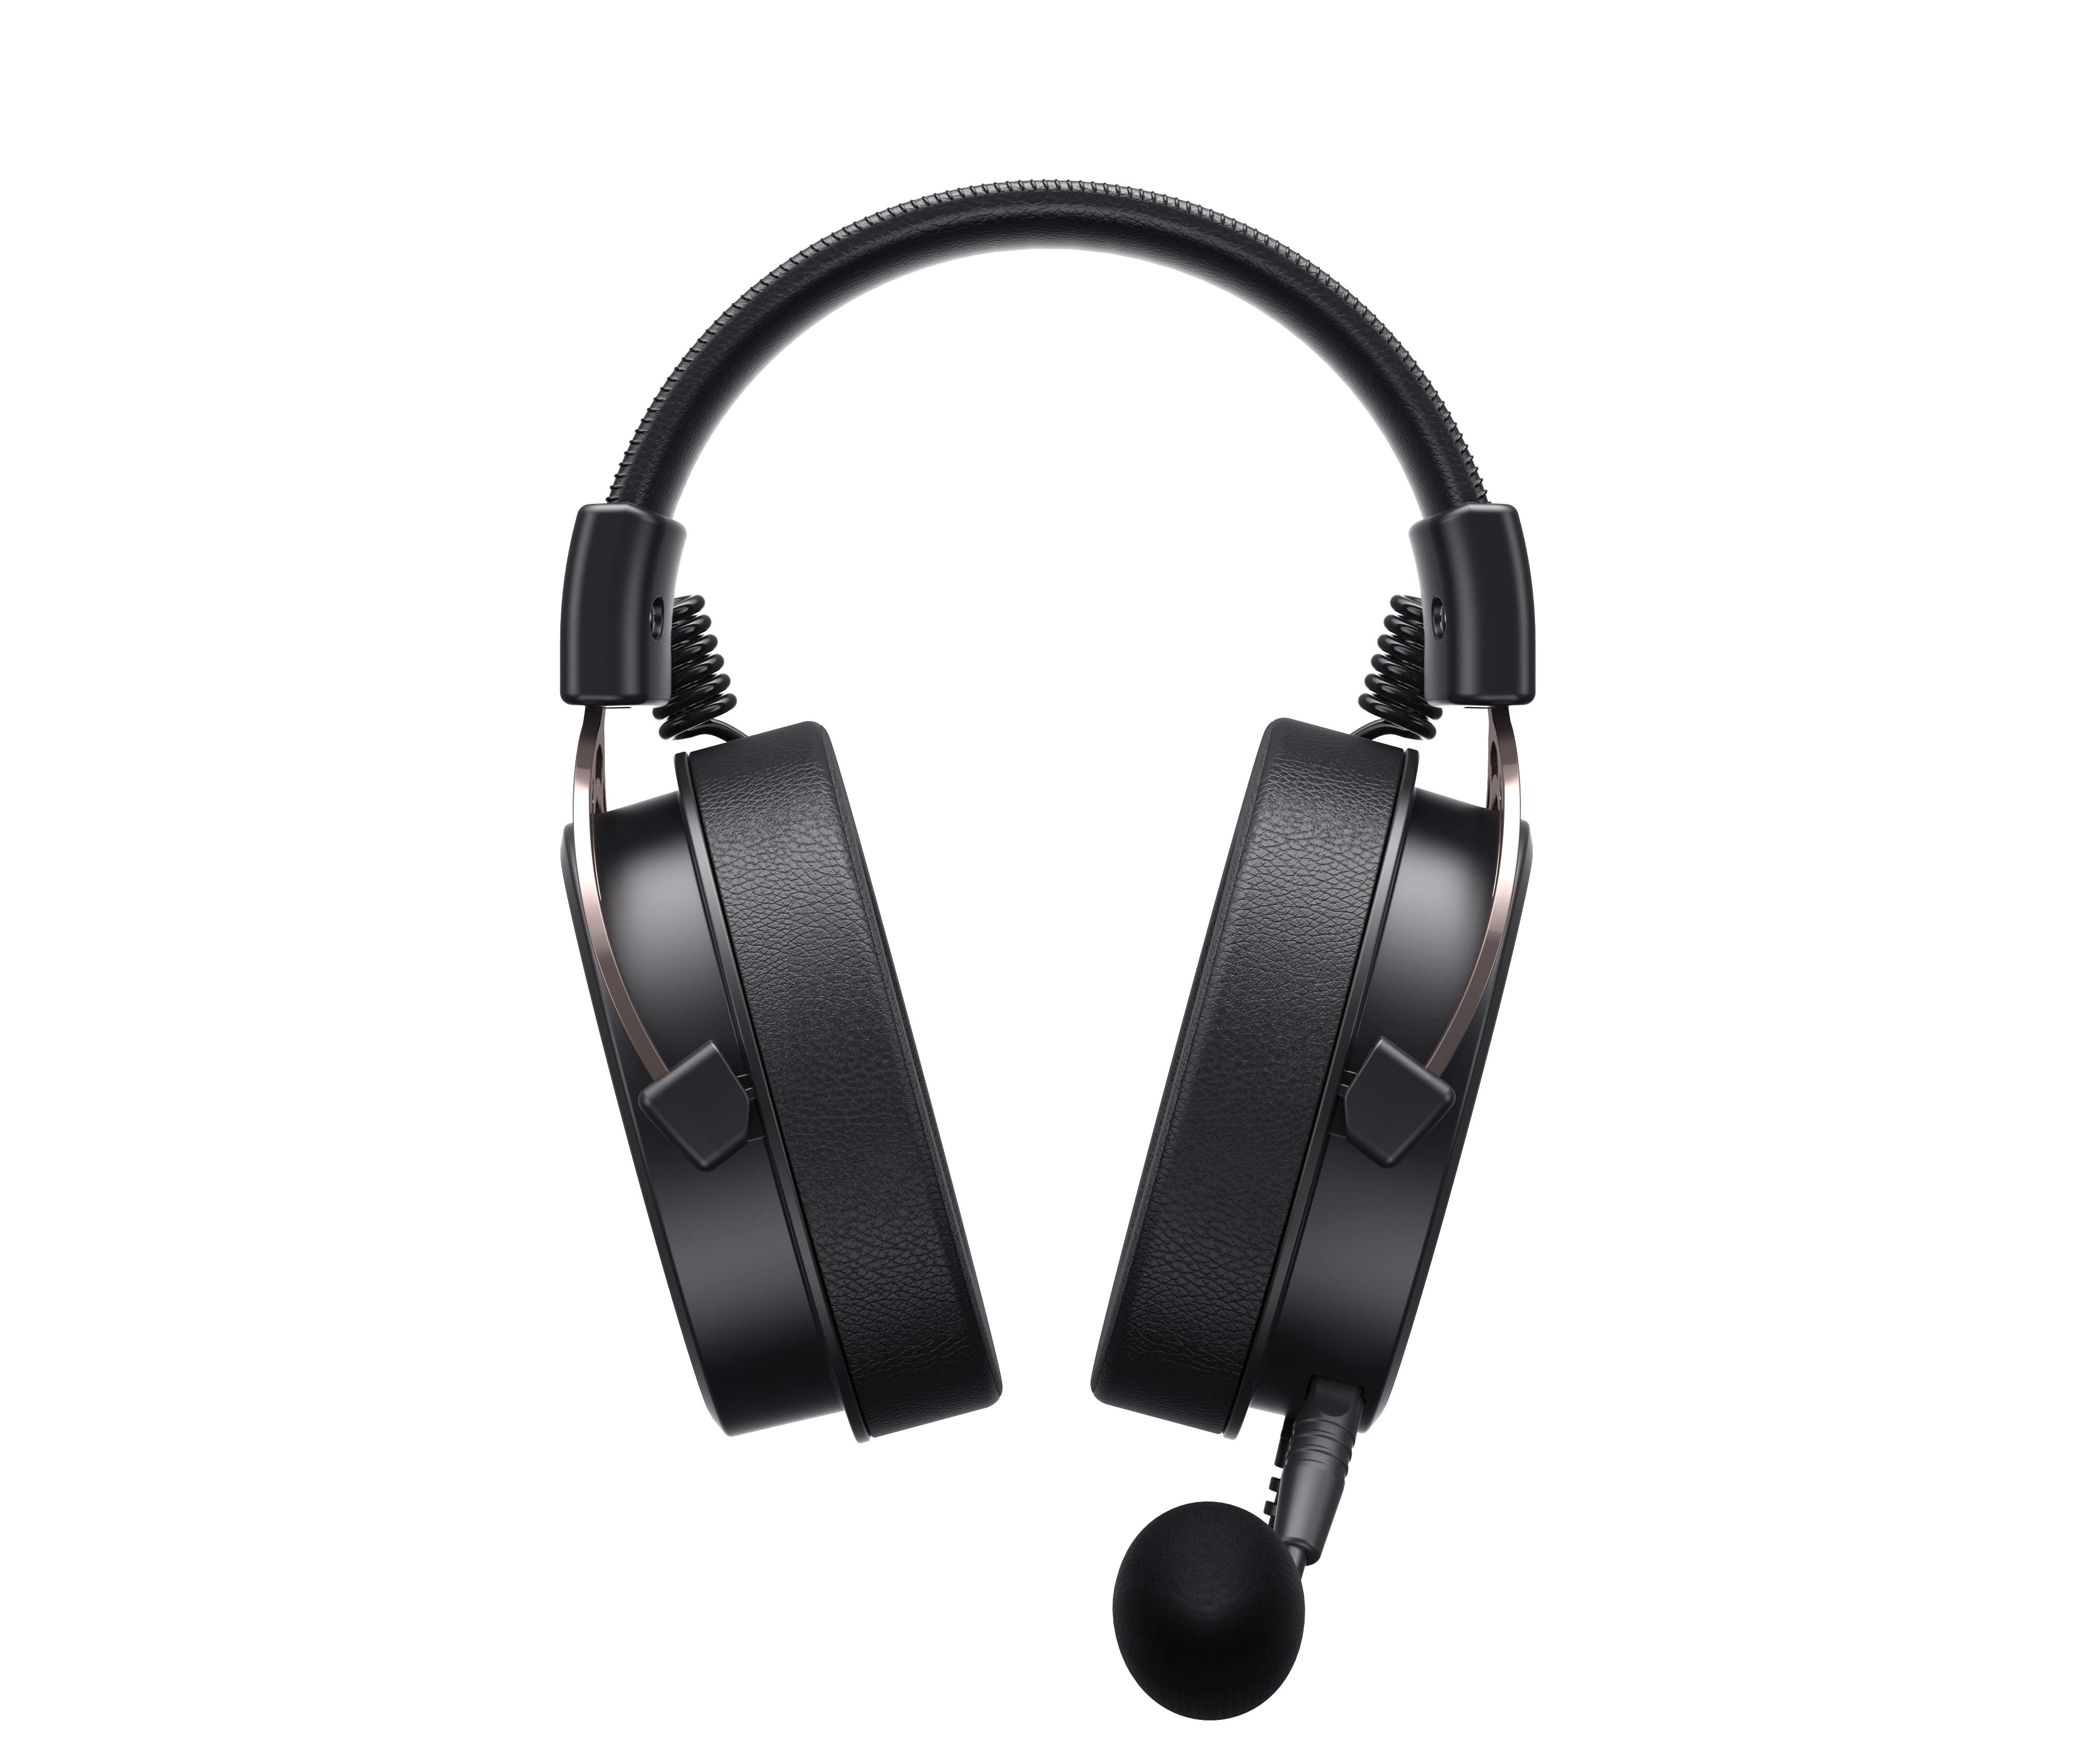 Havit H2030E Wired Gaming Headphones